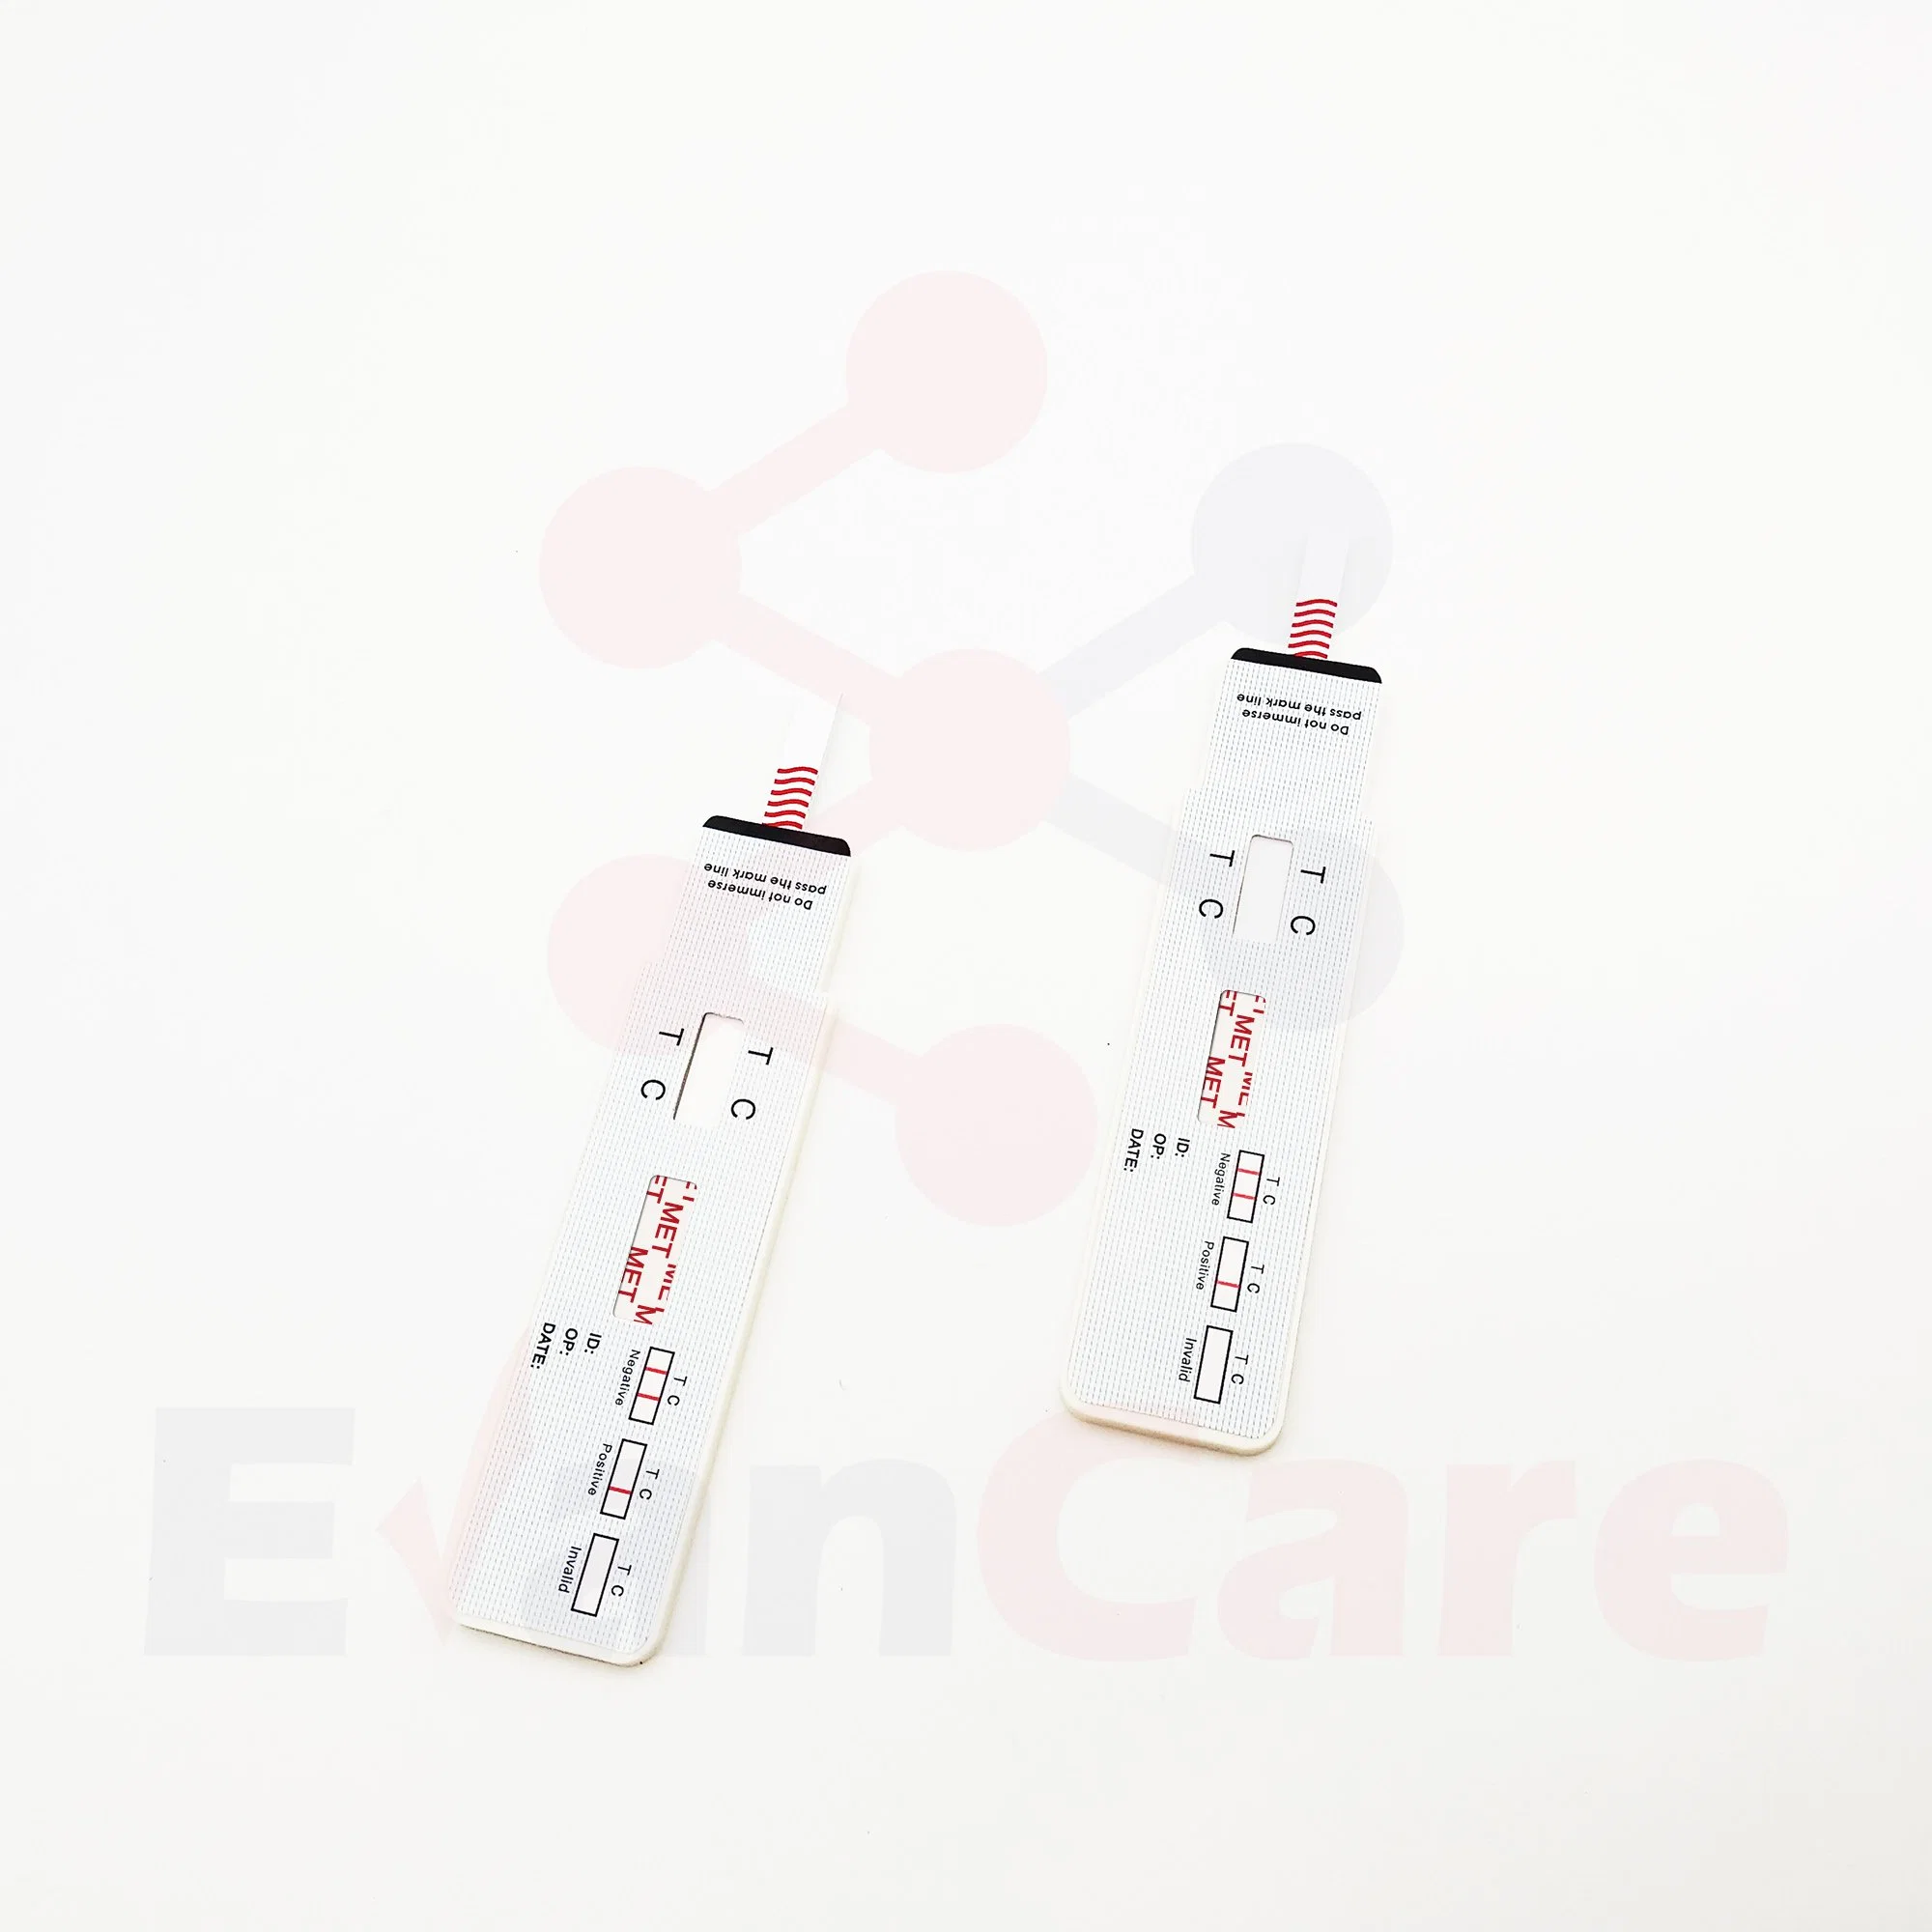 CE Mark Home Urine Drug Test Rapid Test Kit Mop Met Ket Screen Test